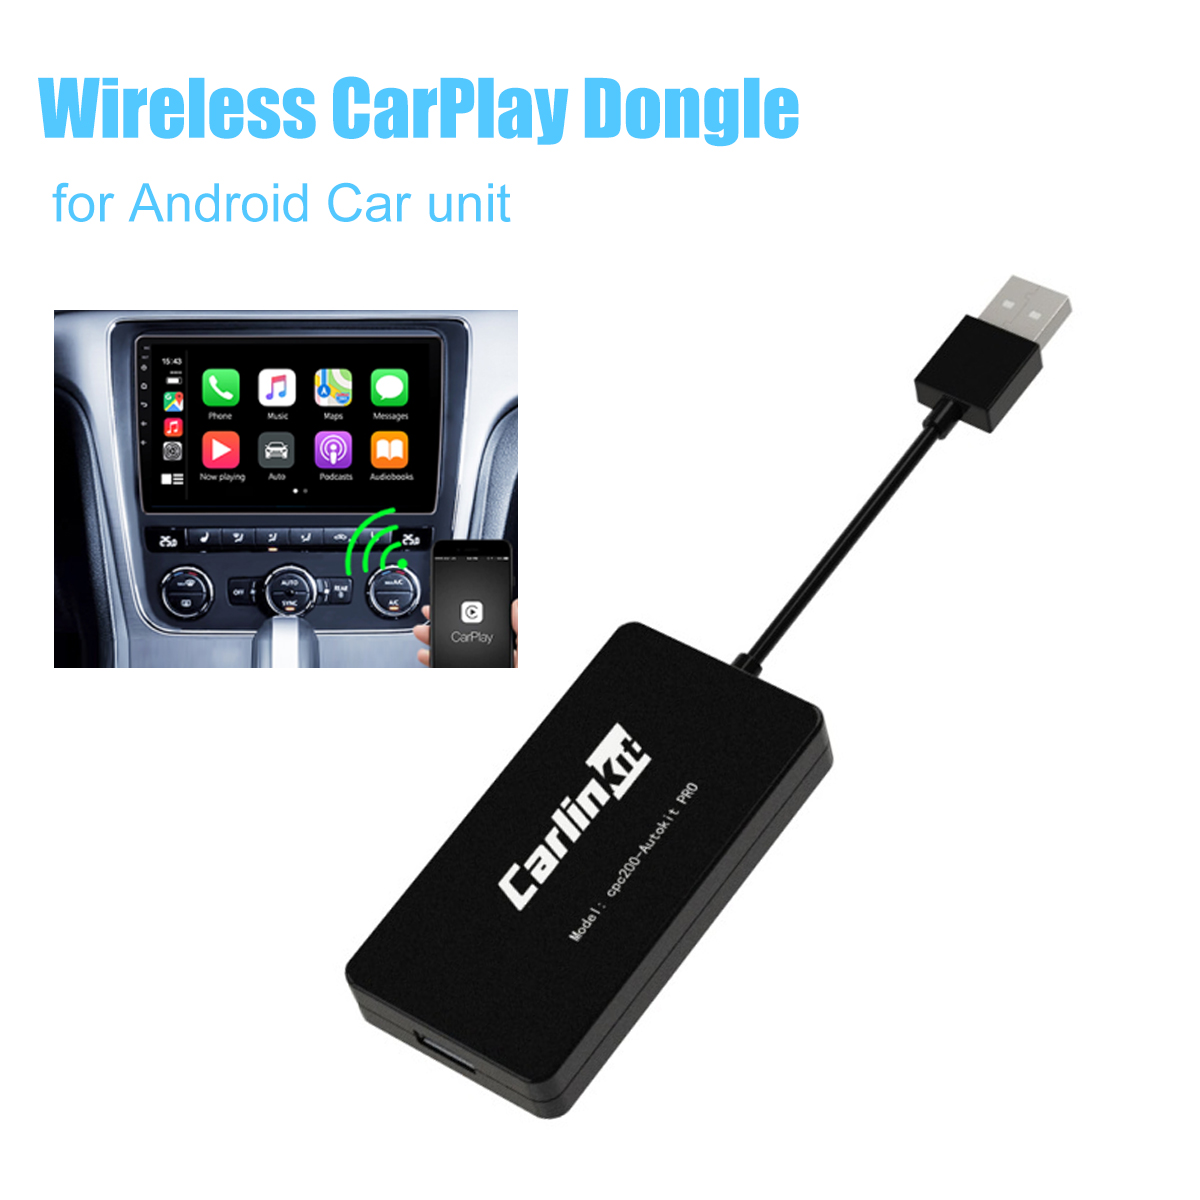 wireless carplay dongle